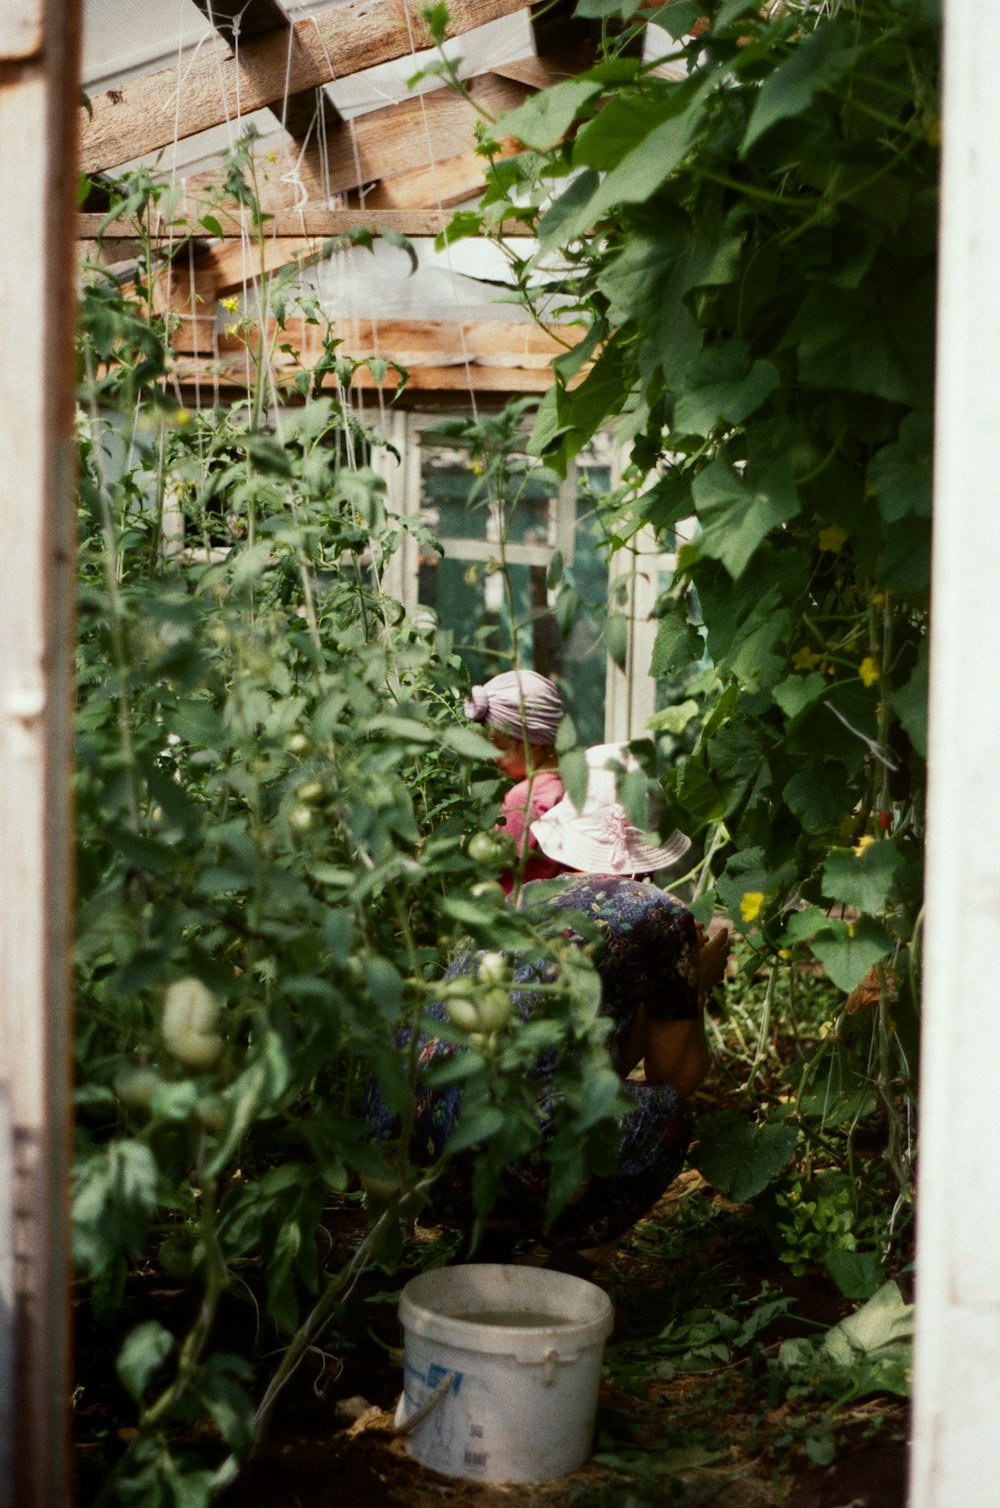 Una donna inginocchiata in un giardino con molte piante